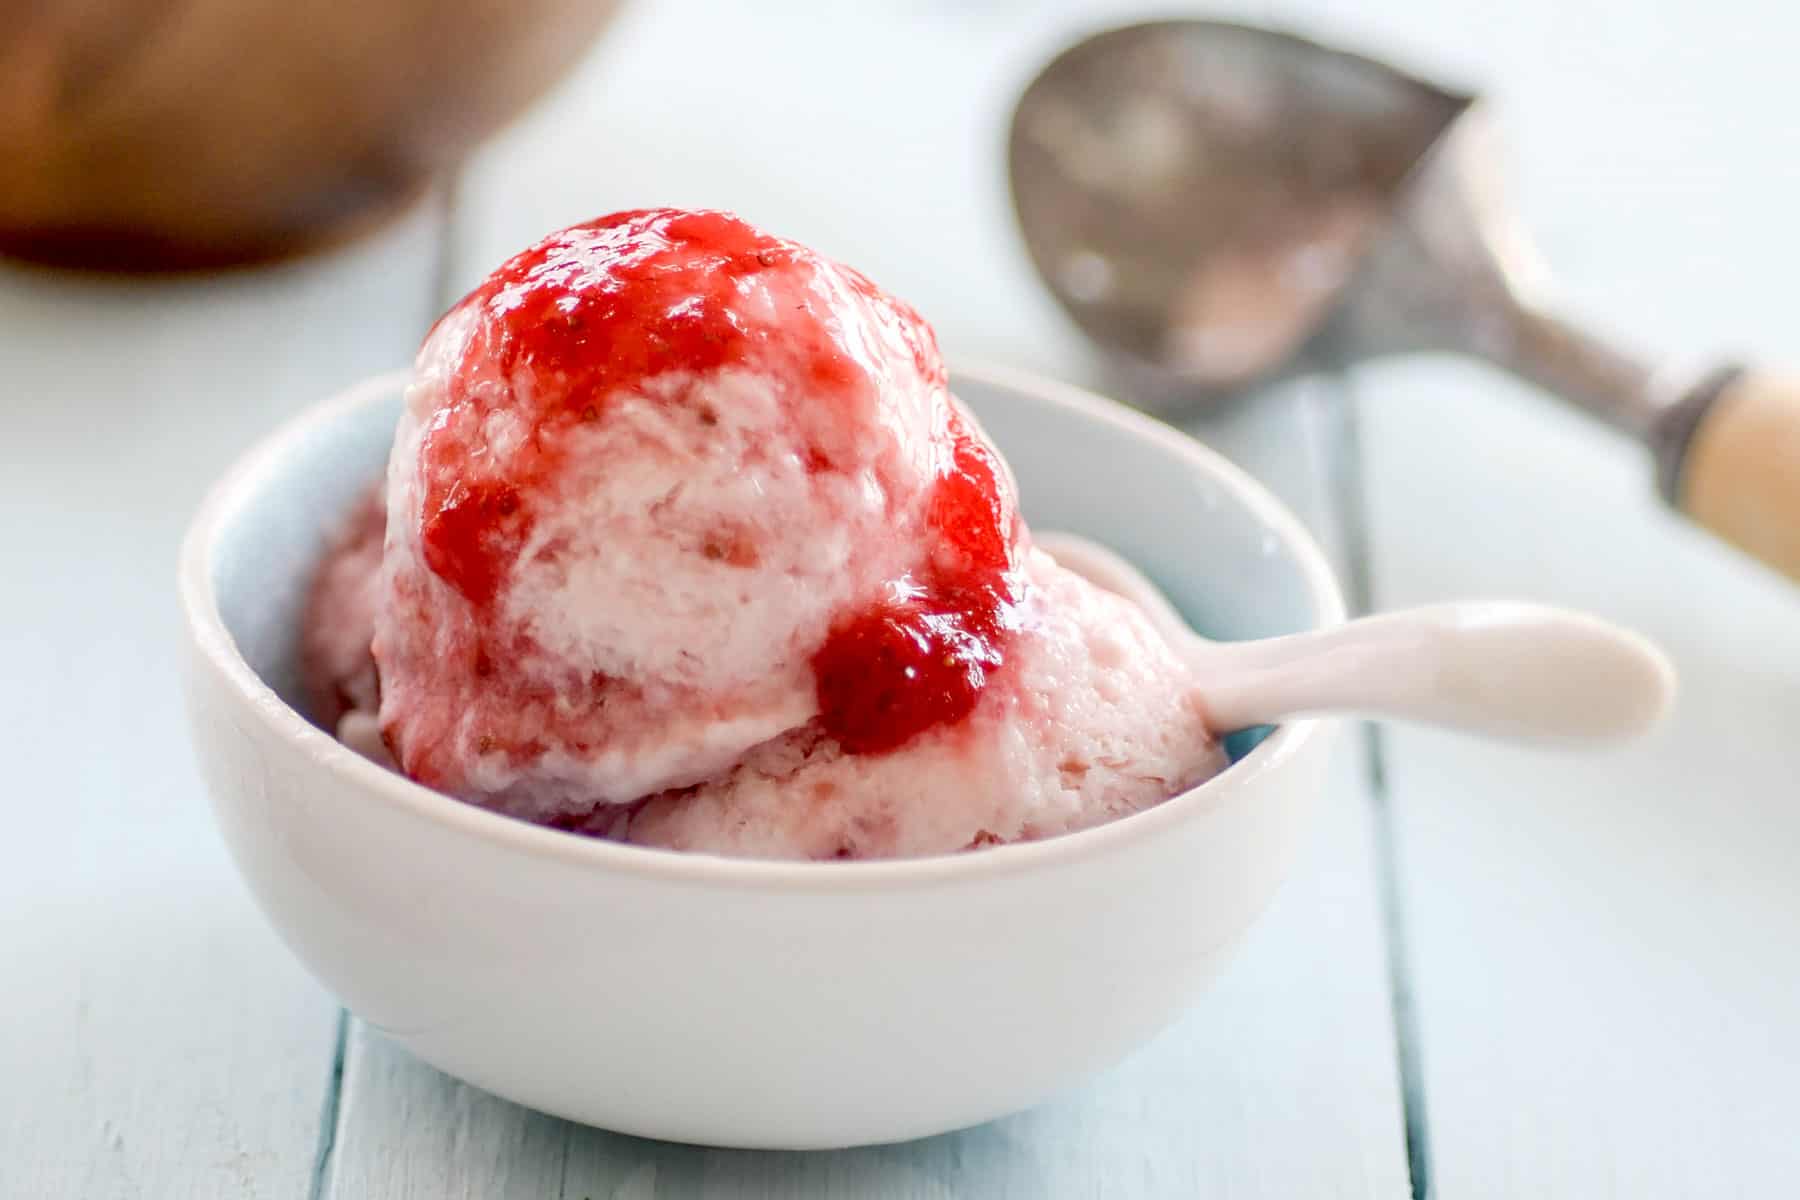 Strawberry ice cream.